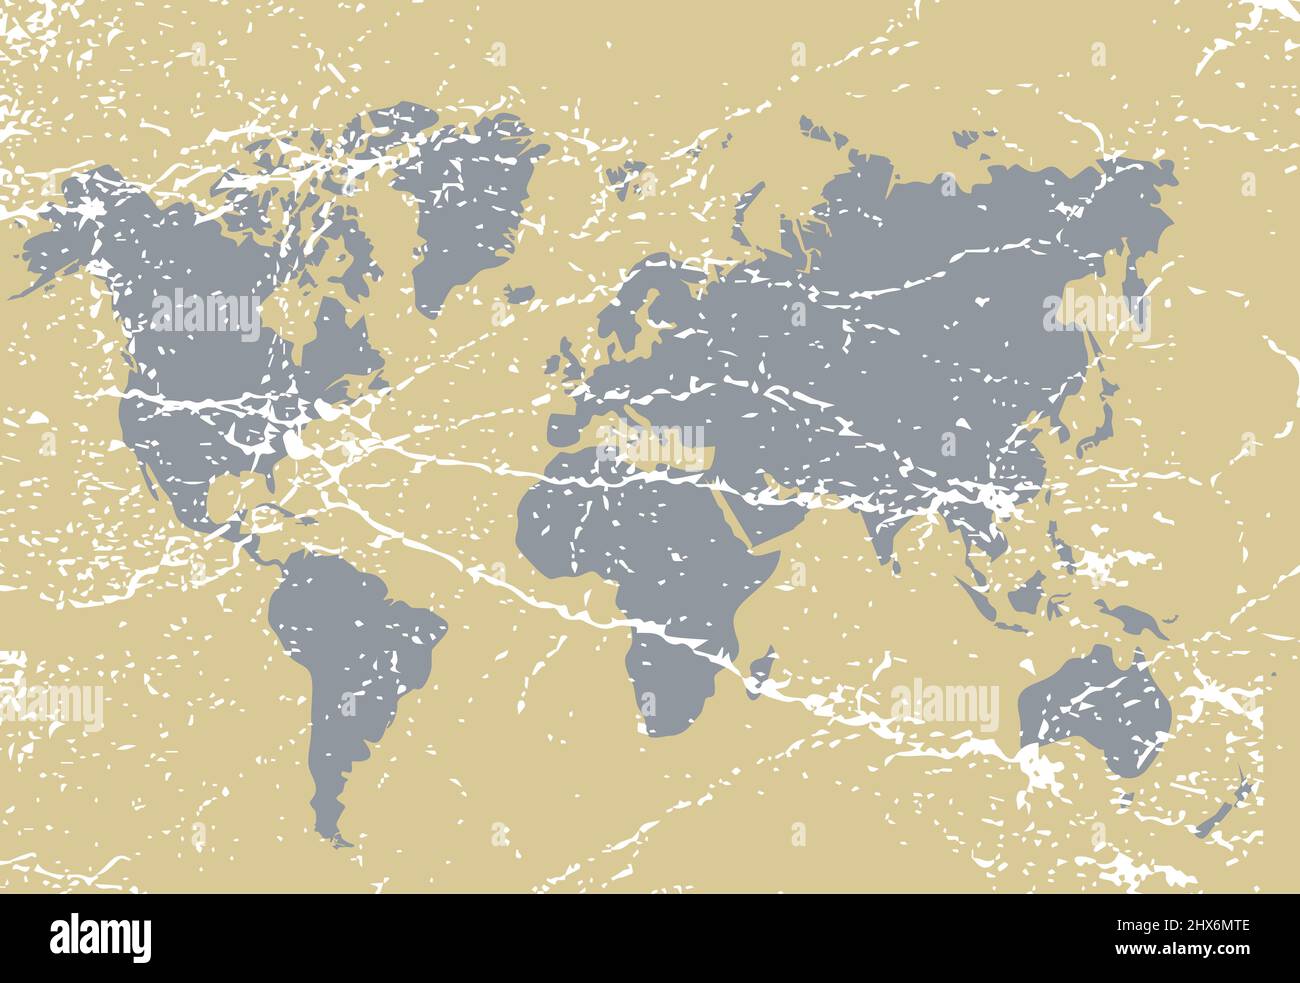 Illustration de la carte du monde de grunge vintage Banque D'Images